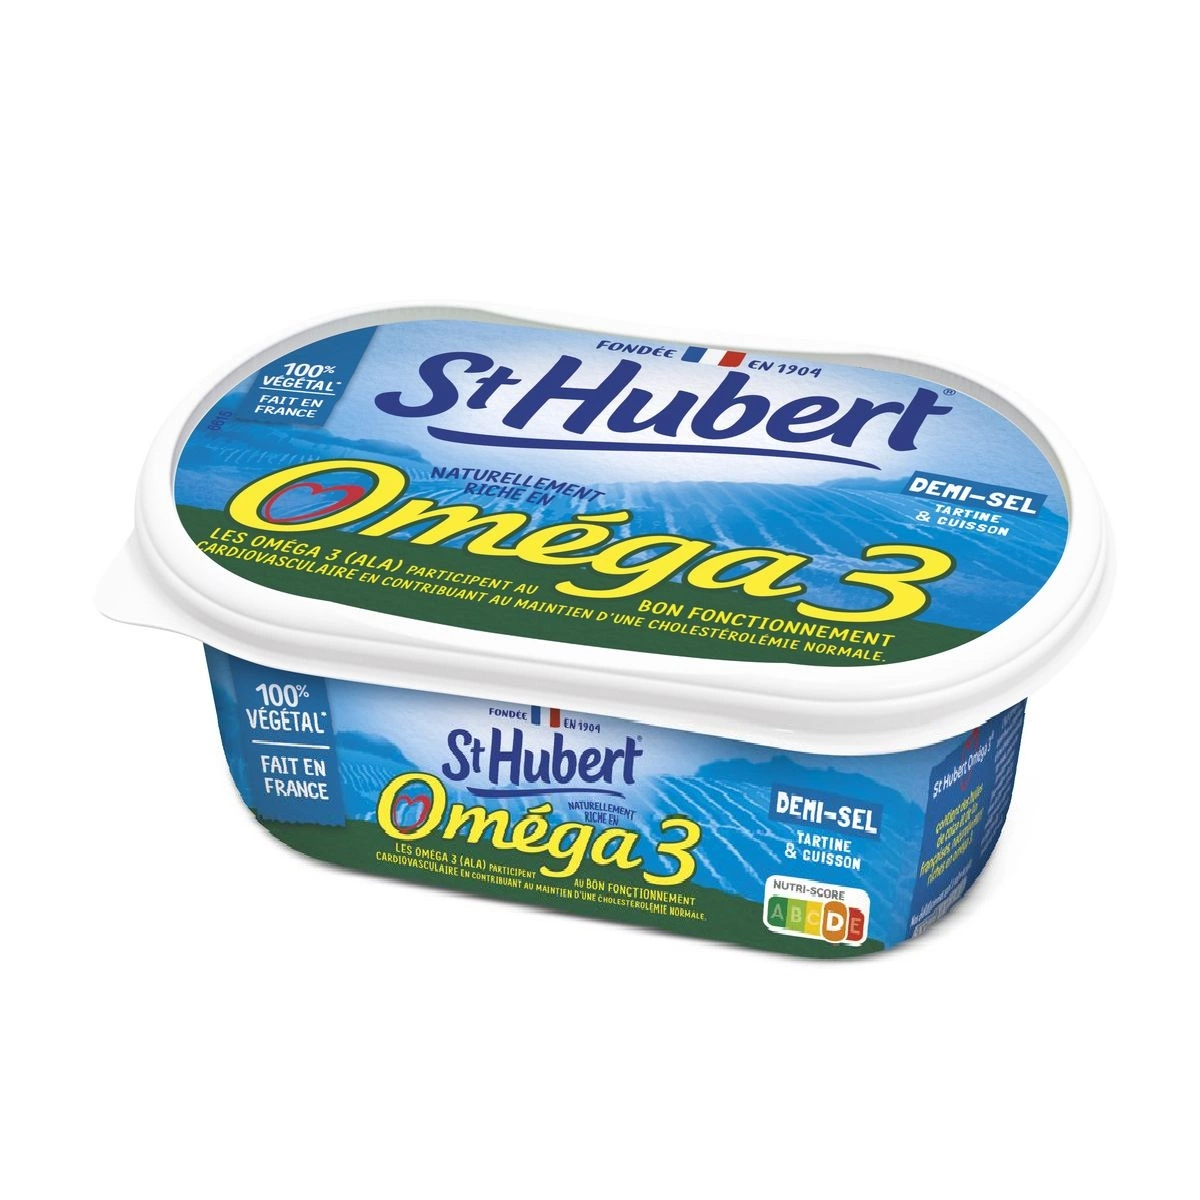 St Hubert Margarine Omega 3 lightly salted 510g